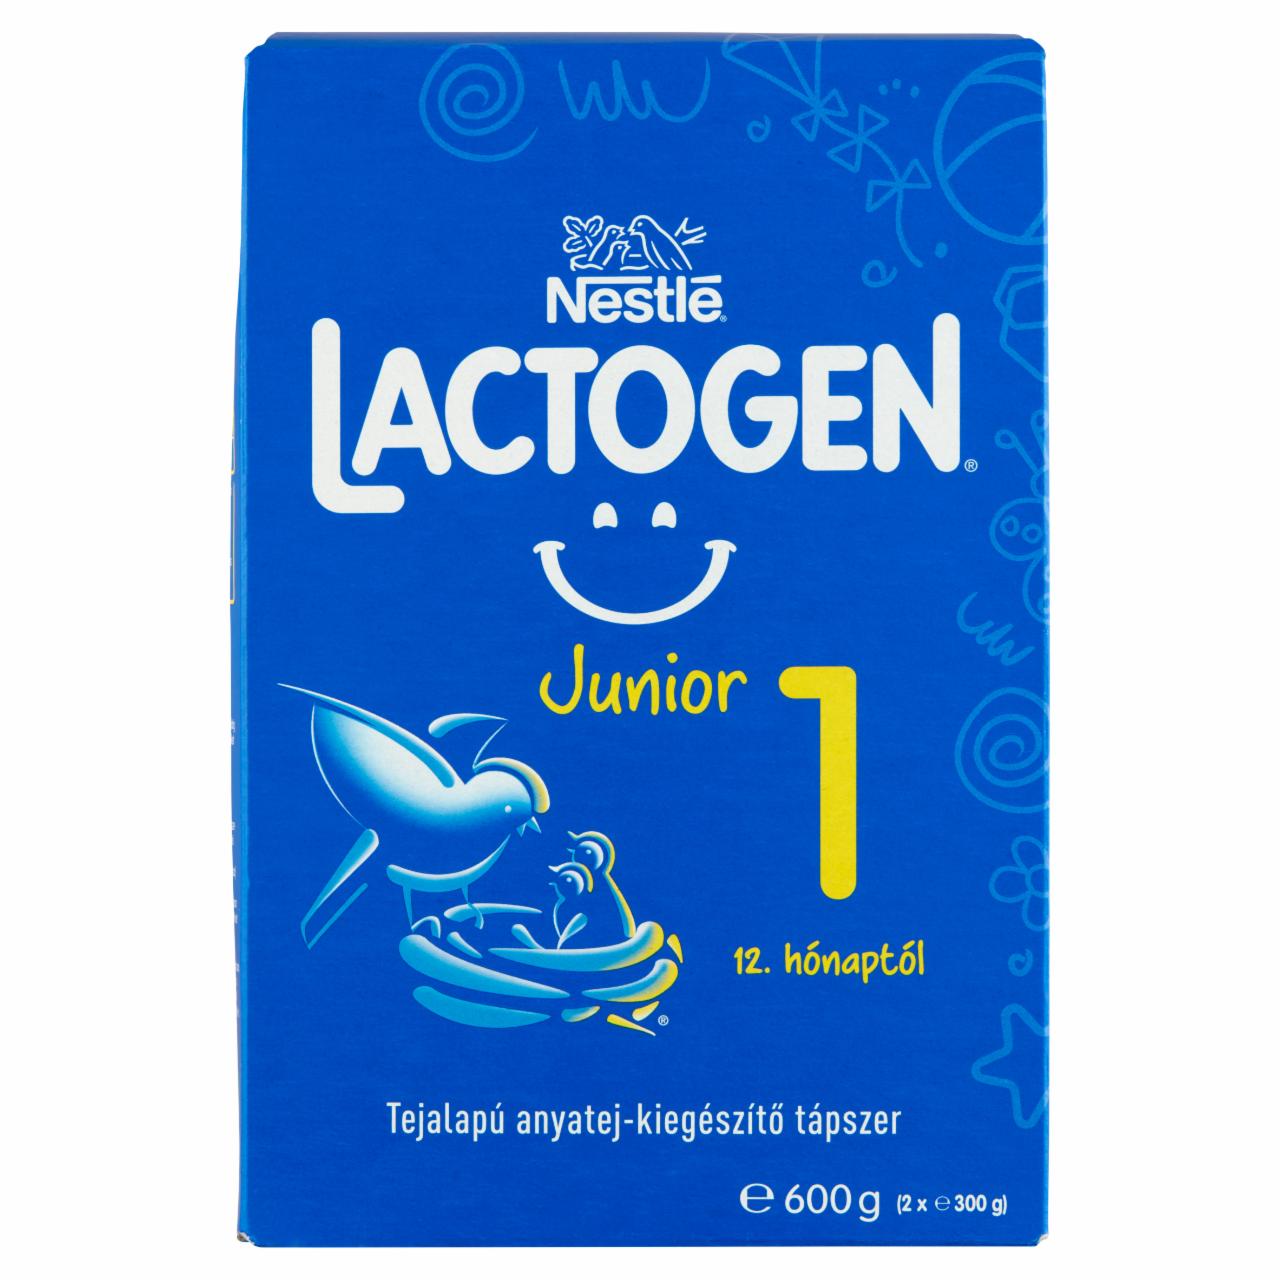 Képek - Nestlé Lactogen Junior 1 tejalapú anyatej-kiegészítő tápszer 12. hónaptól 2 x 300 g (600 g)